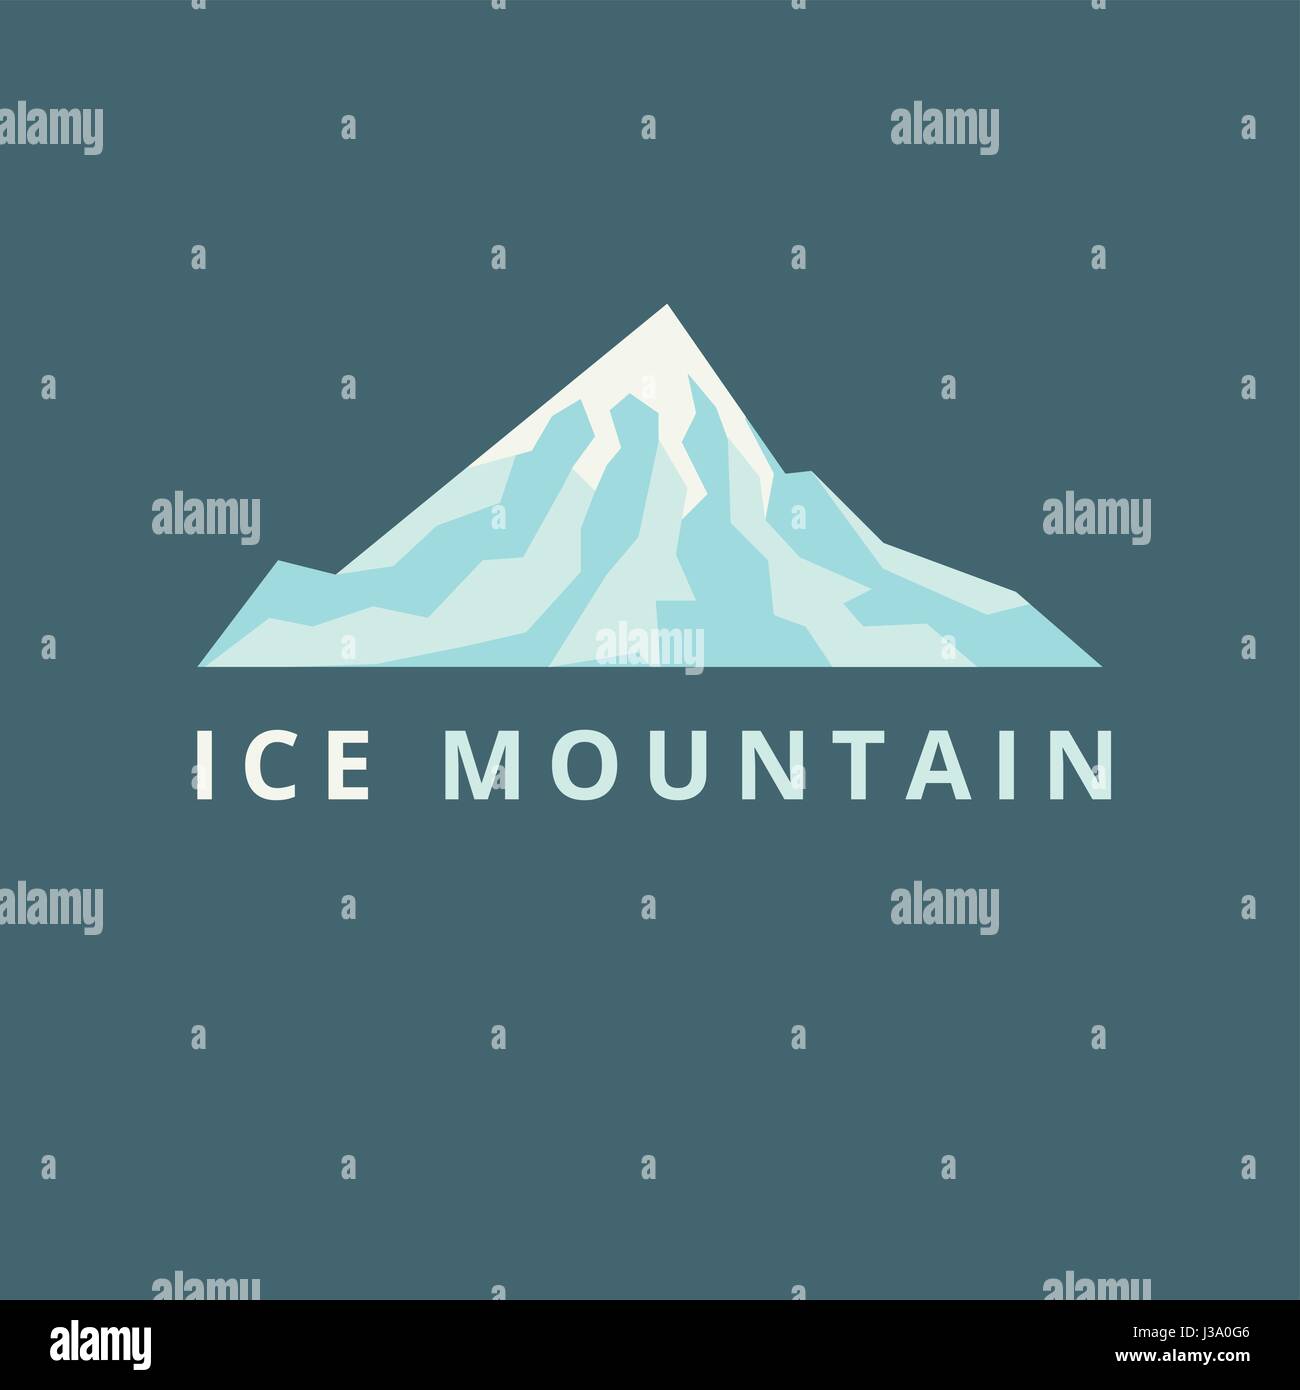 ice mountain vector illusrtration Stock Vector